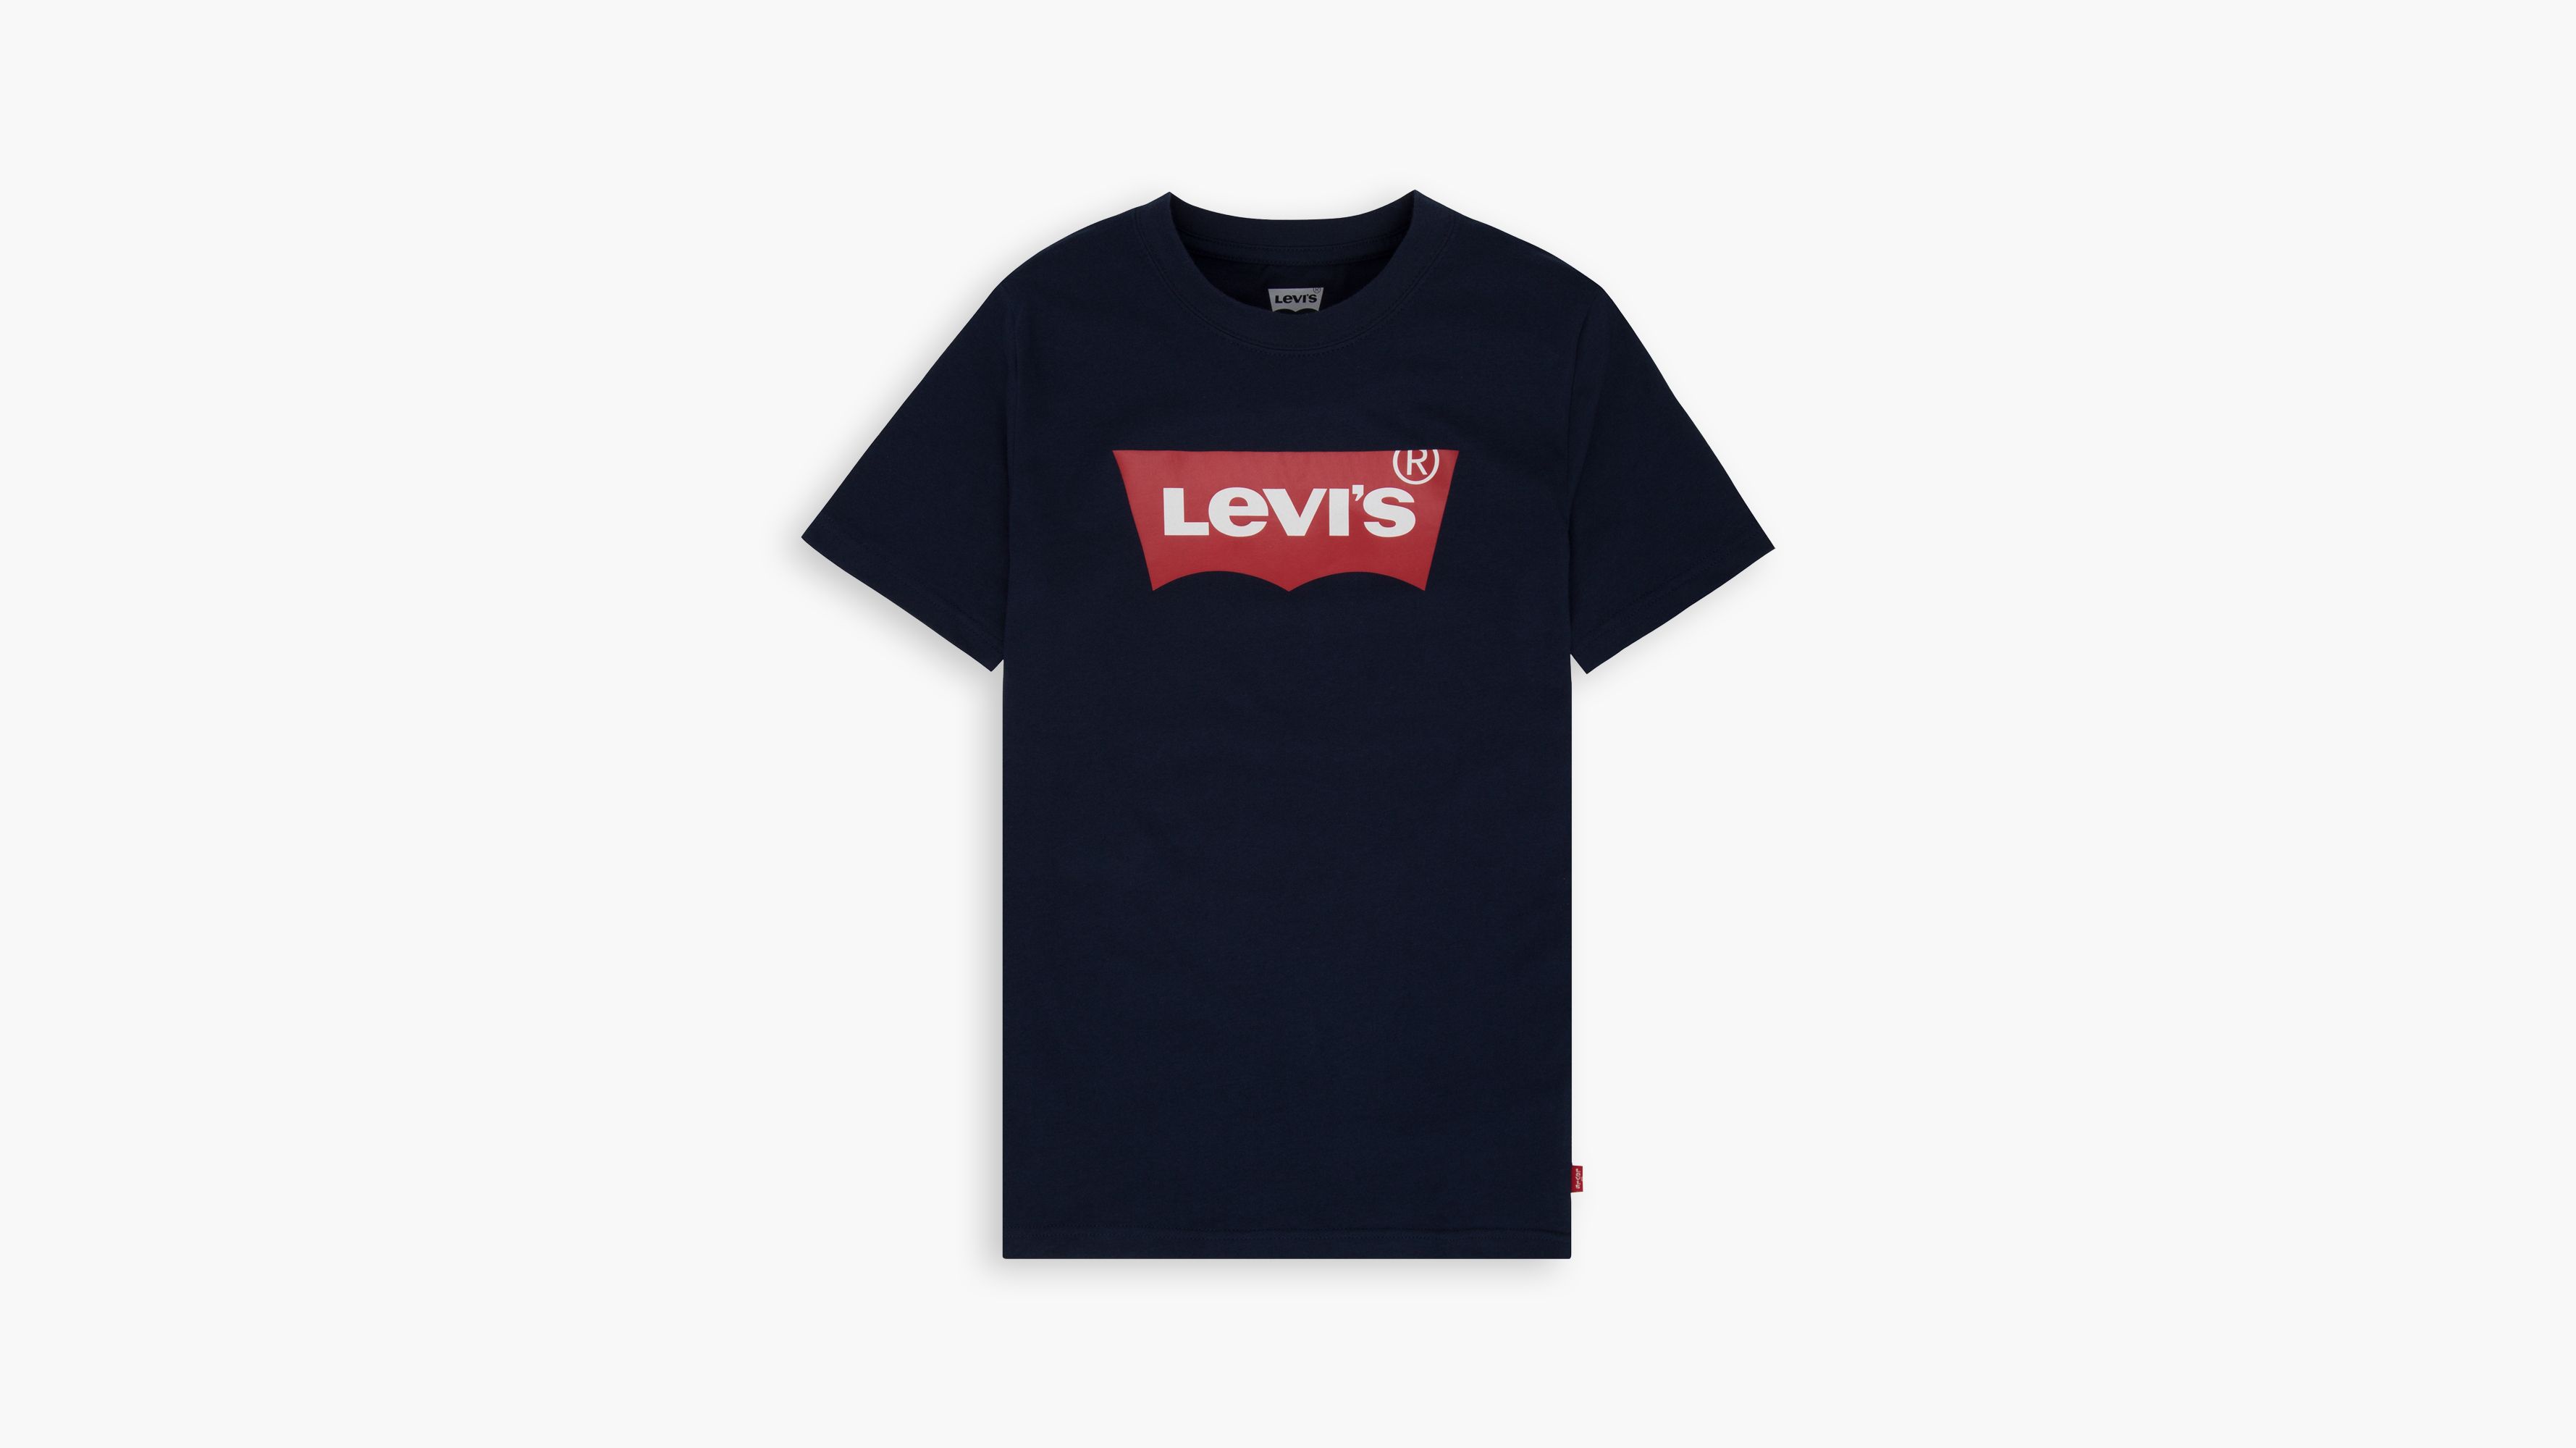 levis shirt boys